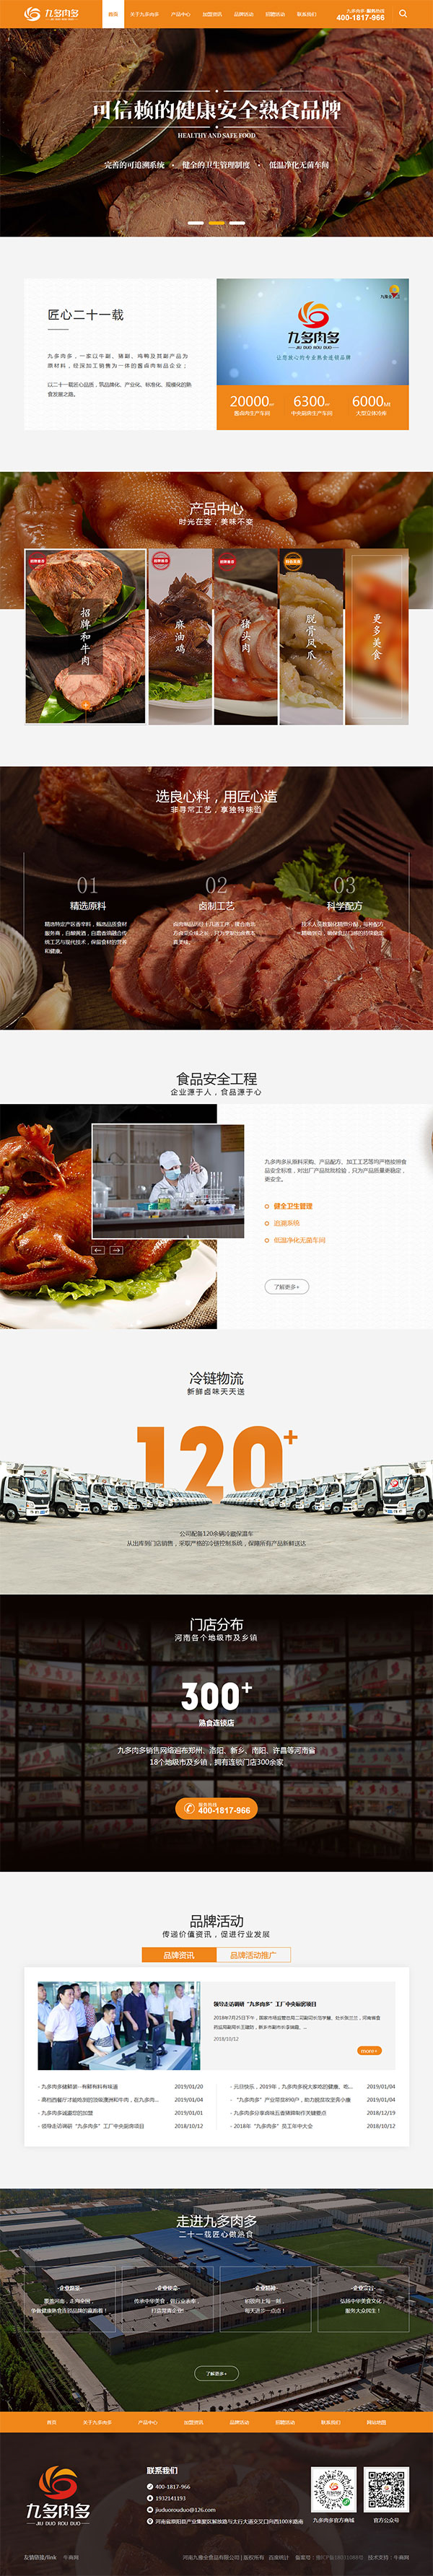 九多肉多熟食-营销型网站页面